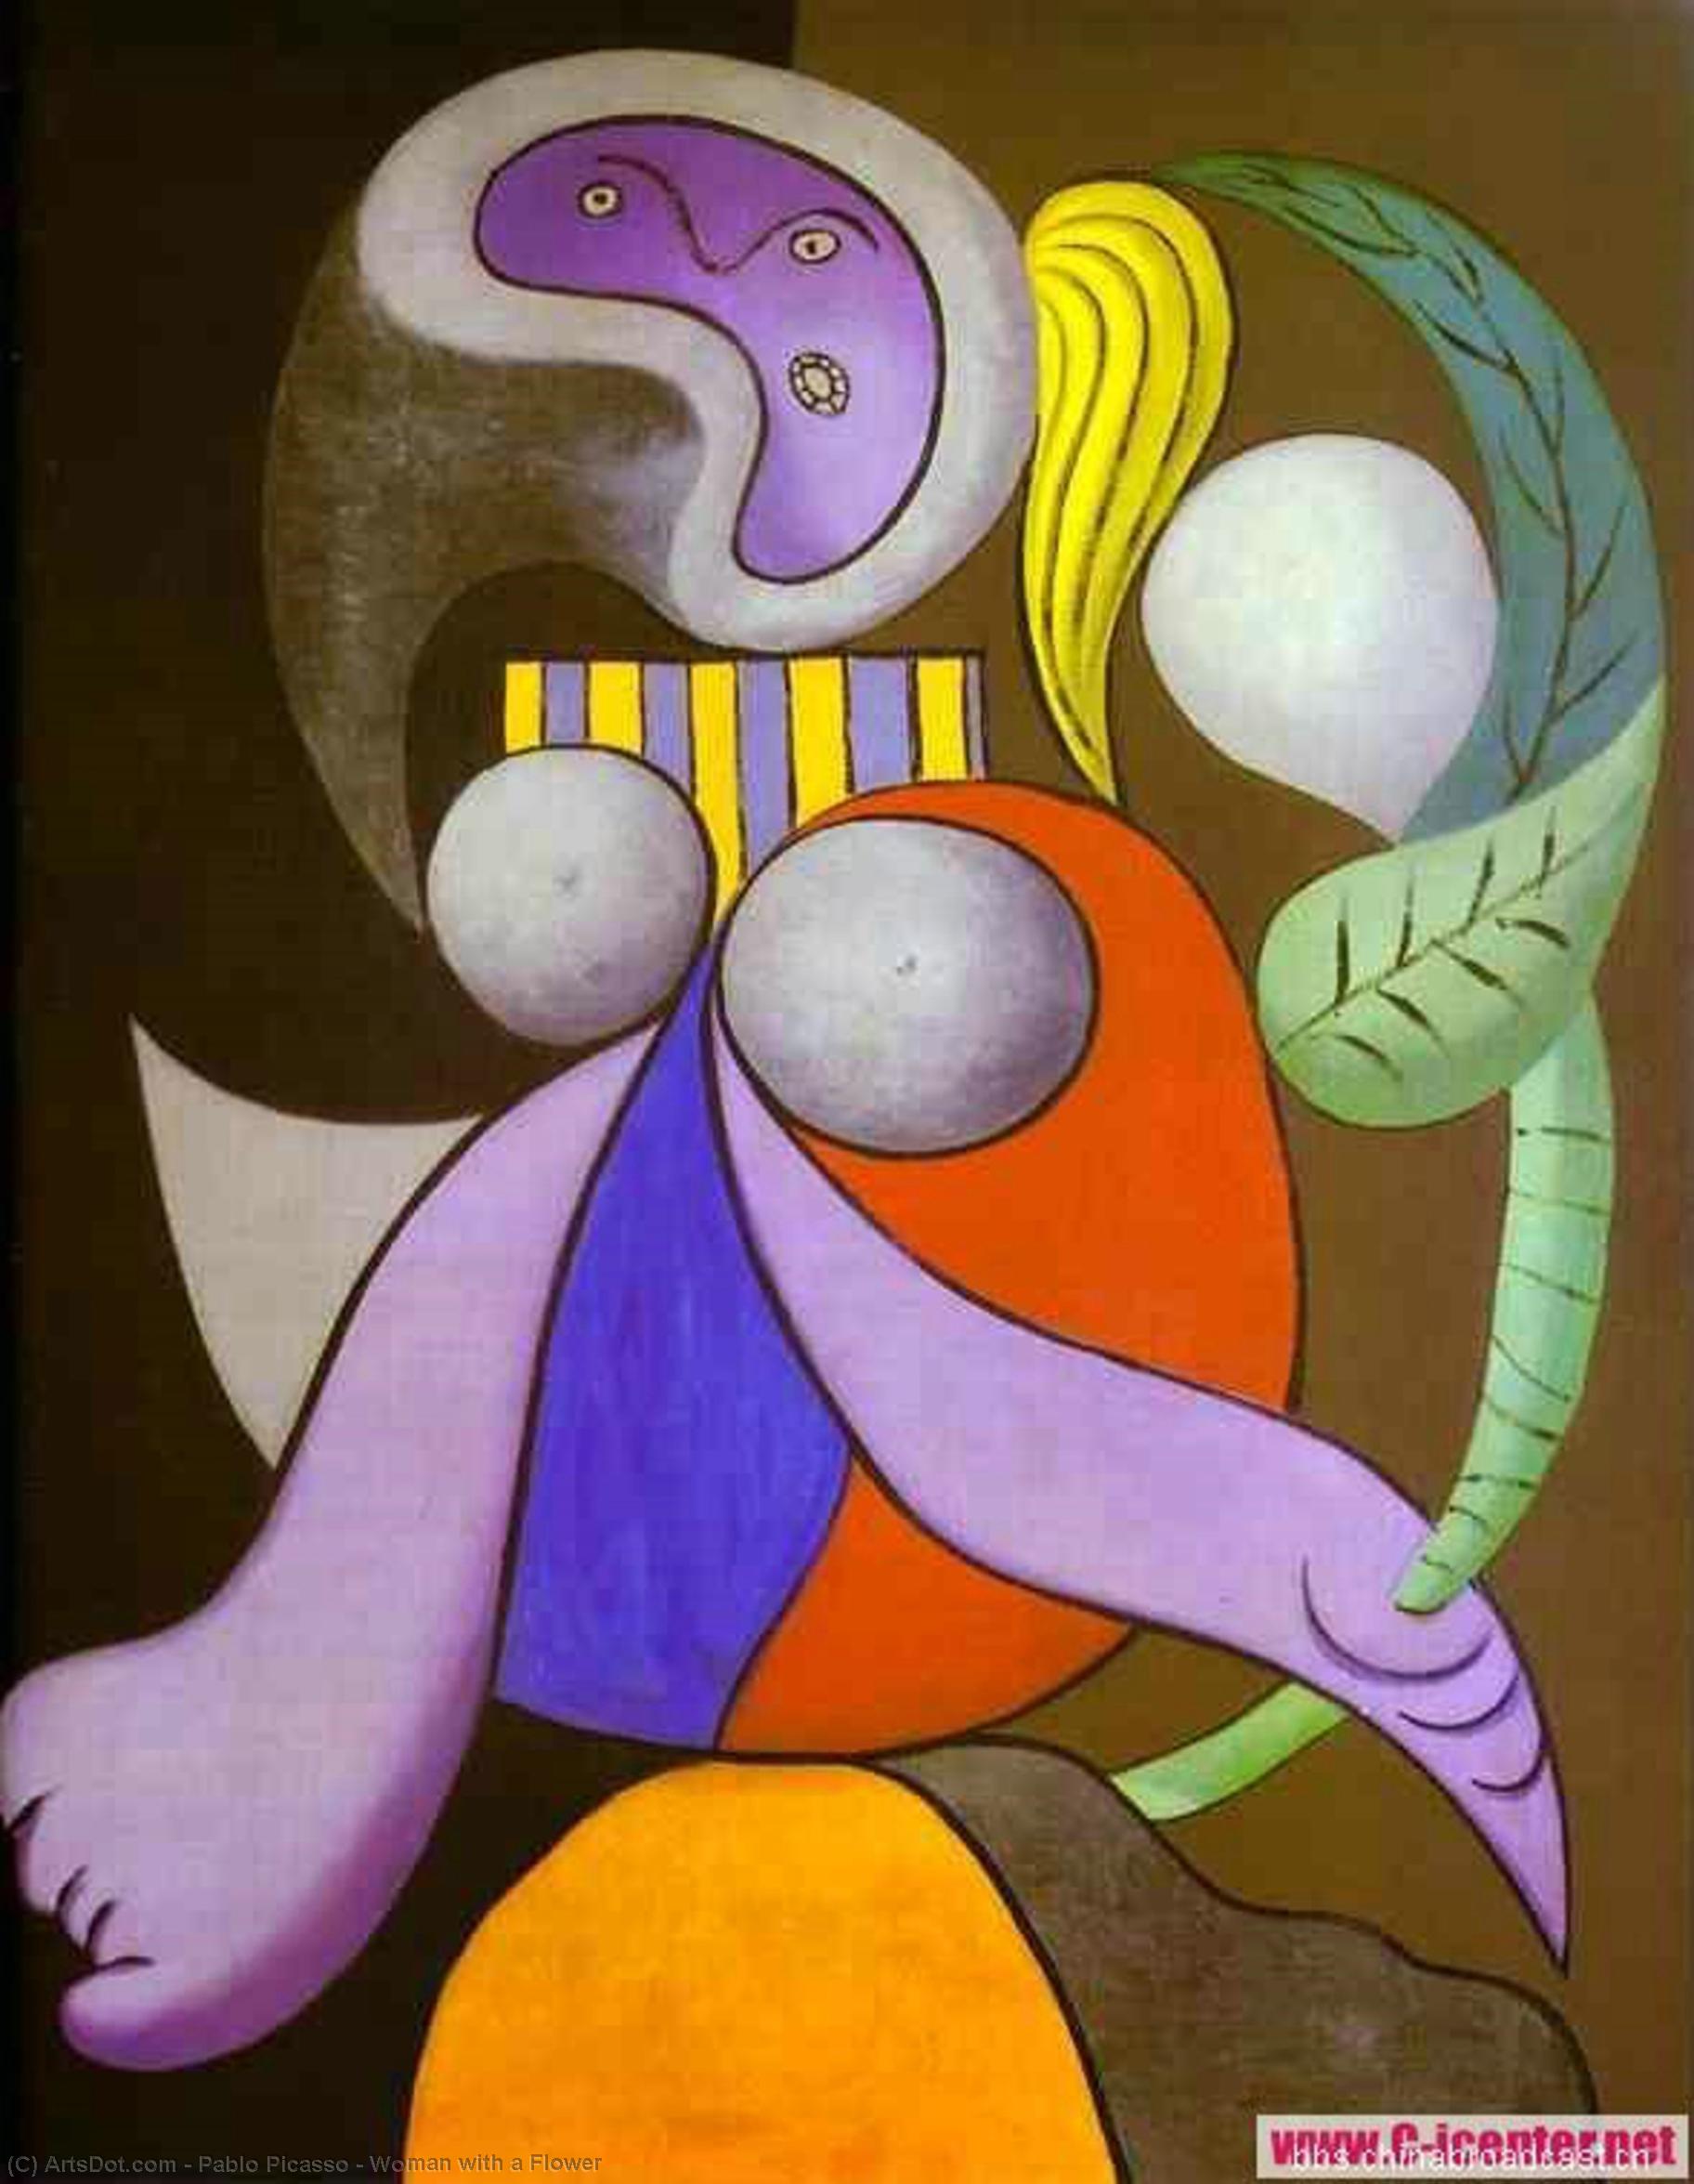 WikiOO.org - אנציקלופדיה לאמנויות יפות - ציור, יצירות אמנות Pablo Picasso - Woman with a Flower